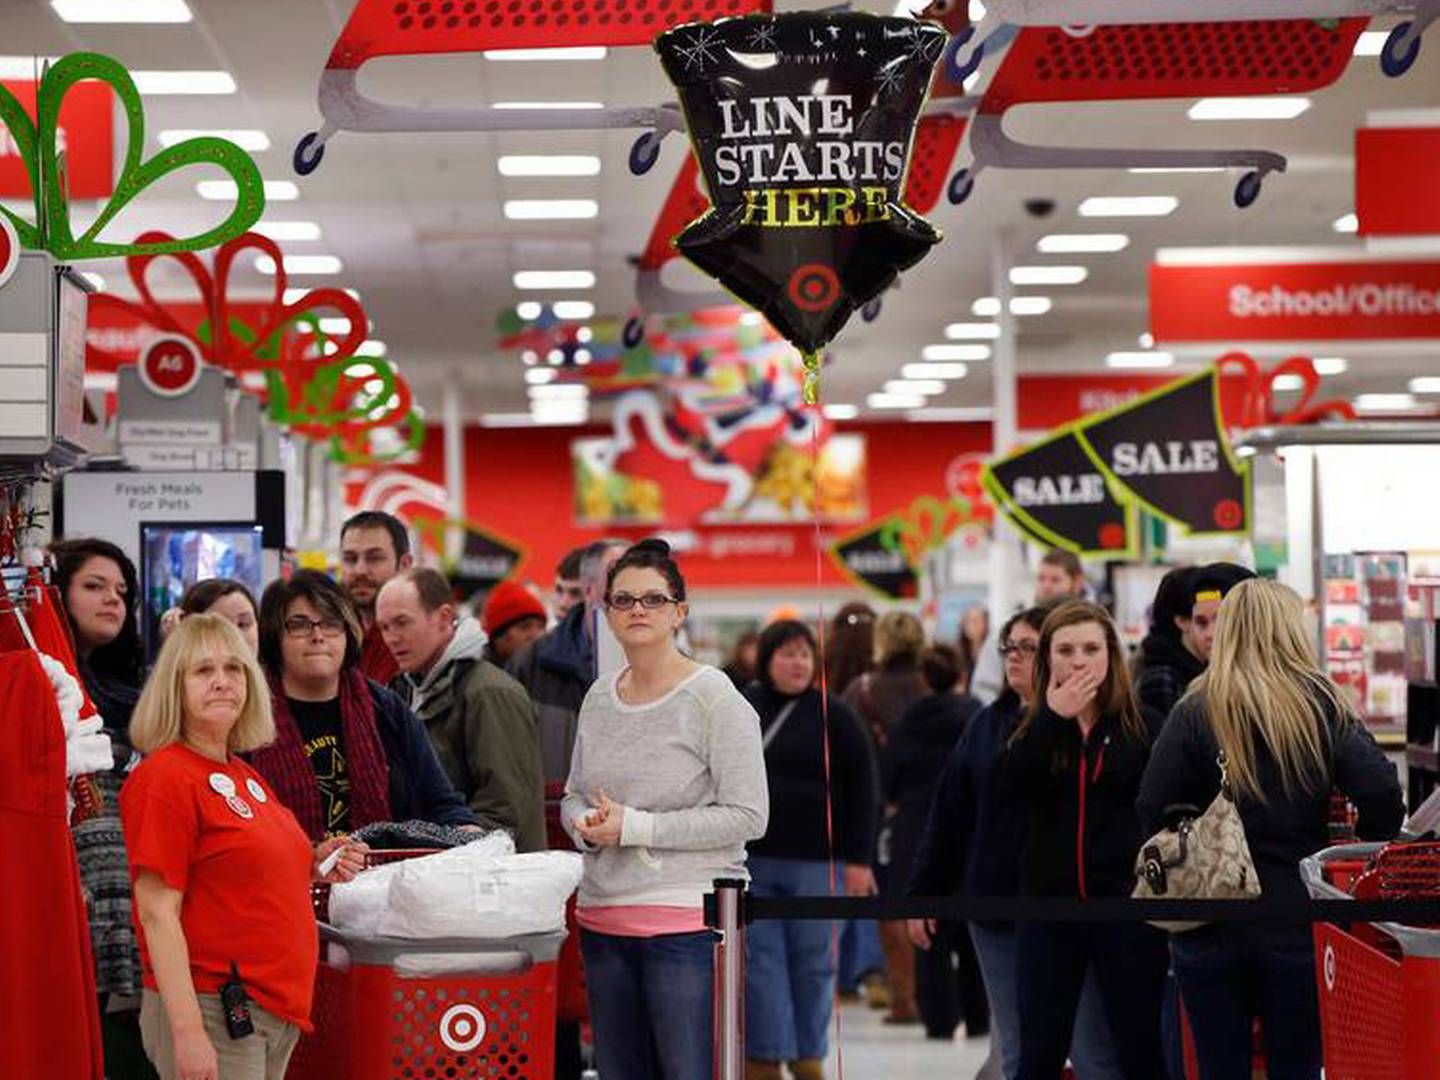 Butikskæden Target kæmper med faldende salg. Nu vil selskabet sænke priserne og gå i benhård priskonkurrence med konkurrenterne. | Foto: Robert F. Bukaty